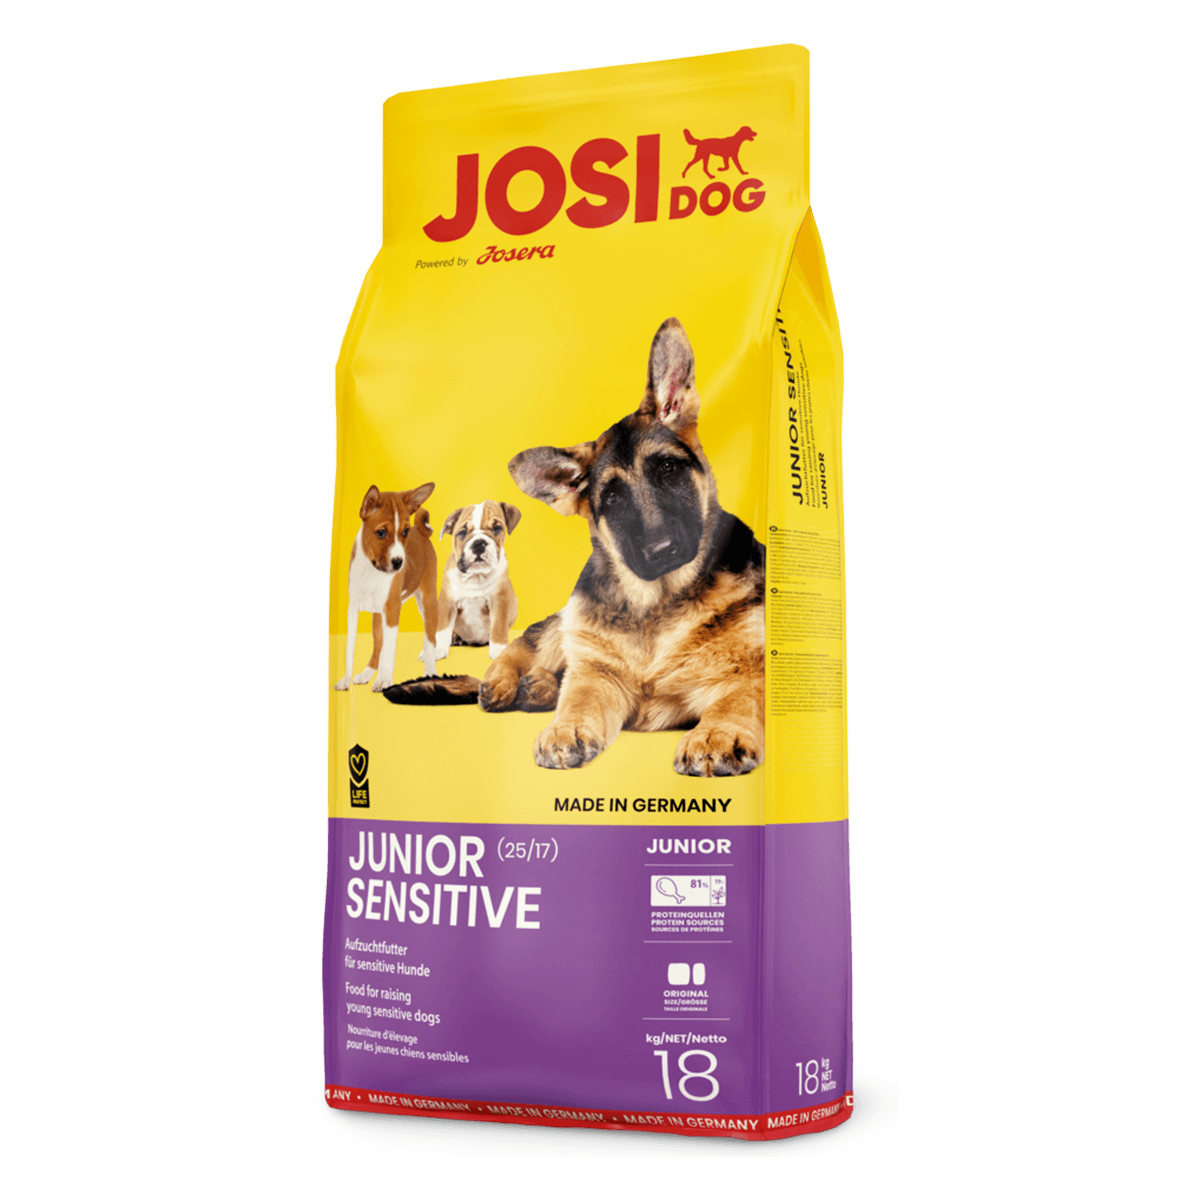 Josera JosiDog Junior Sensitive 25/17, 18 кг - корм Йозера для щенков с чувствительным пищеварением